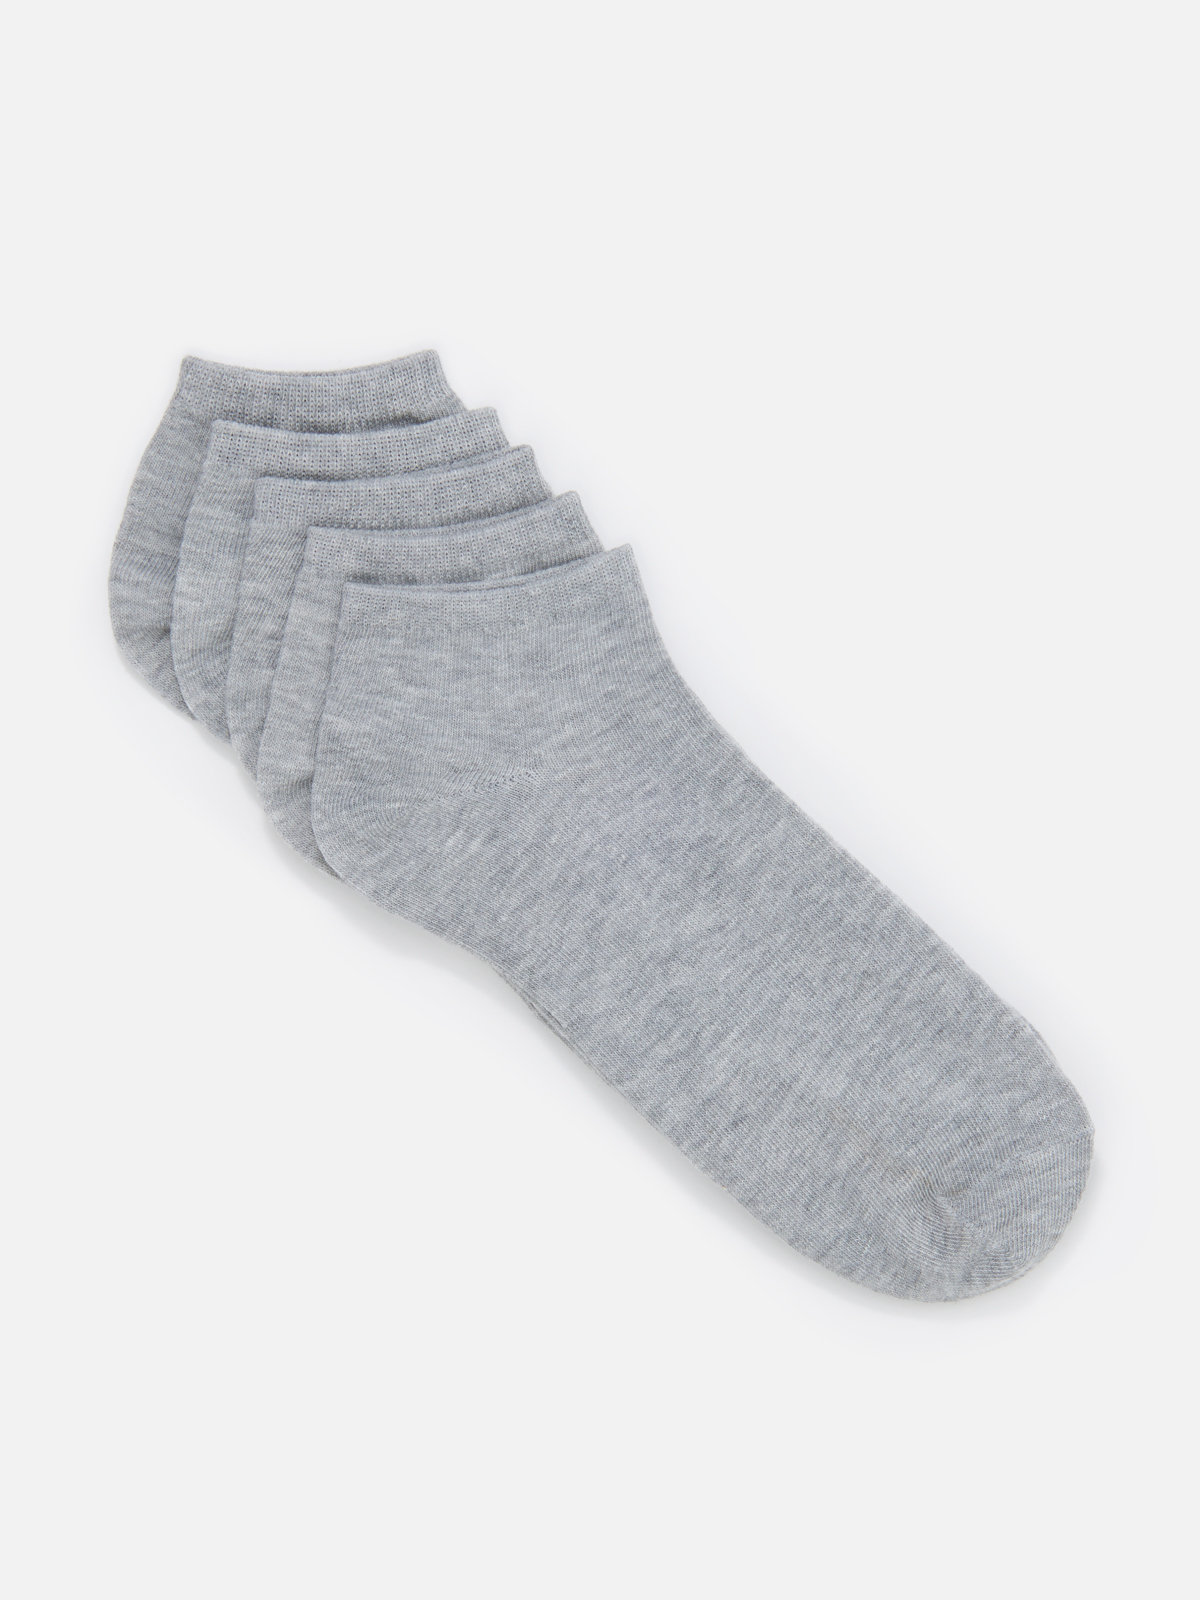 Комплект носков мужских Cotton & Quality 51001Т5 серых 43-46